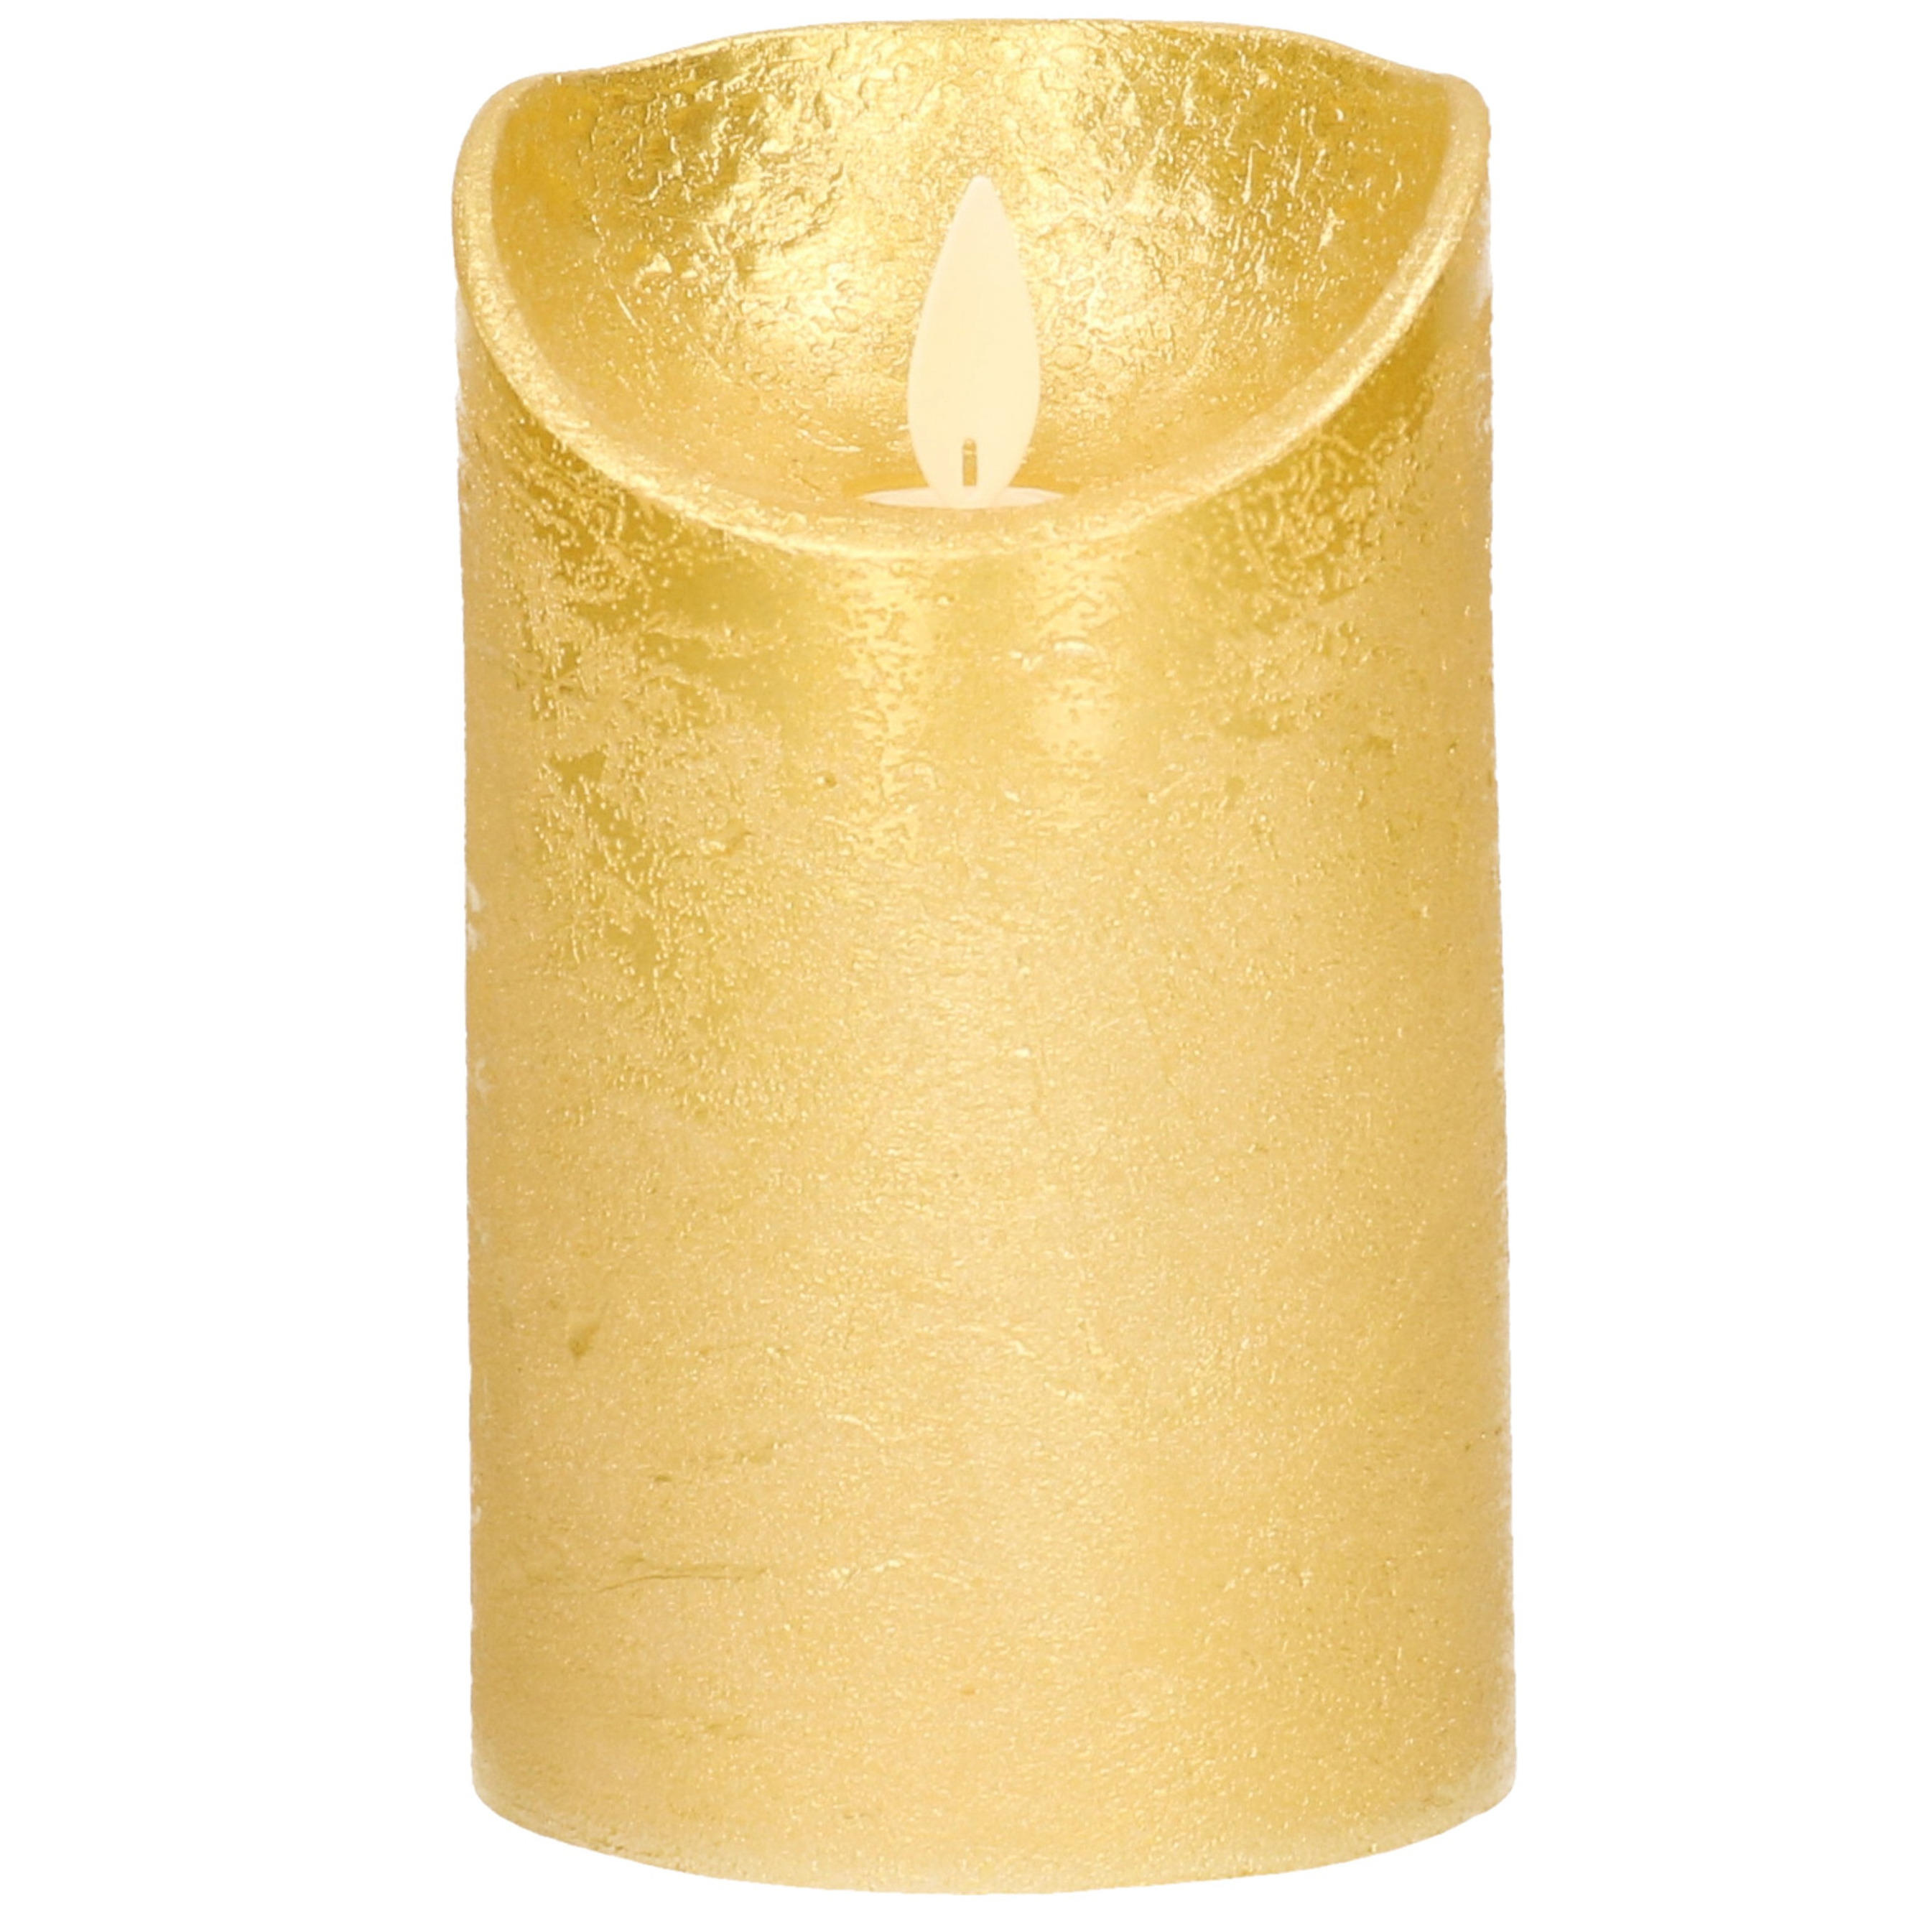 1x Gouden LED kaarsen - stompkaarsen met bewegende vlam 12,5 cm